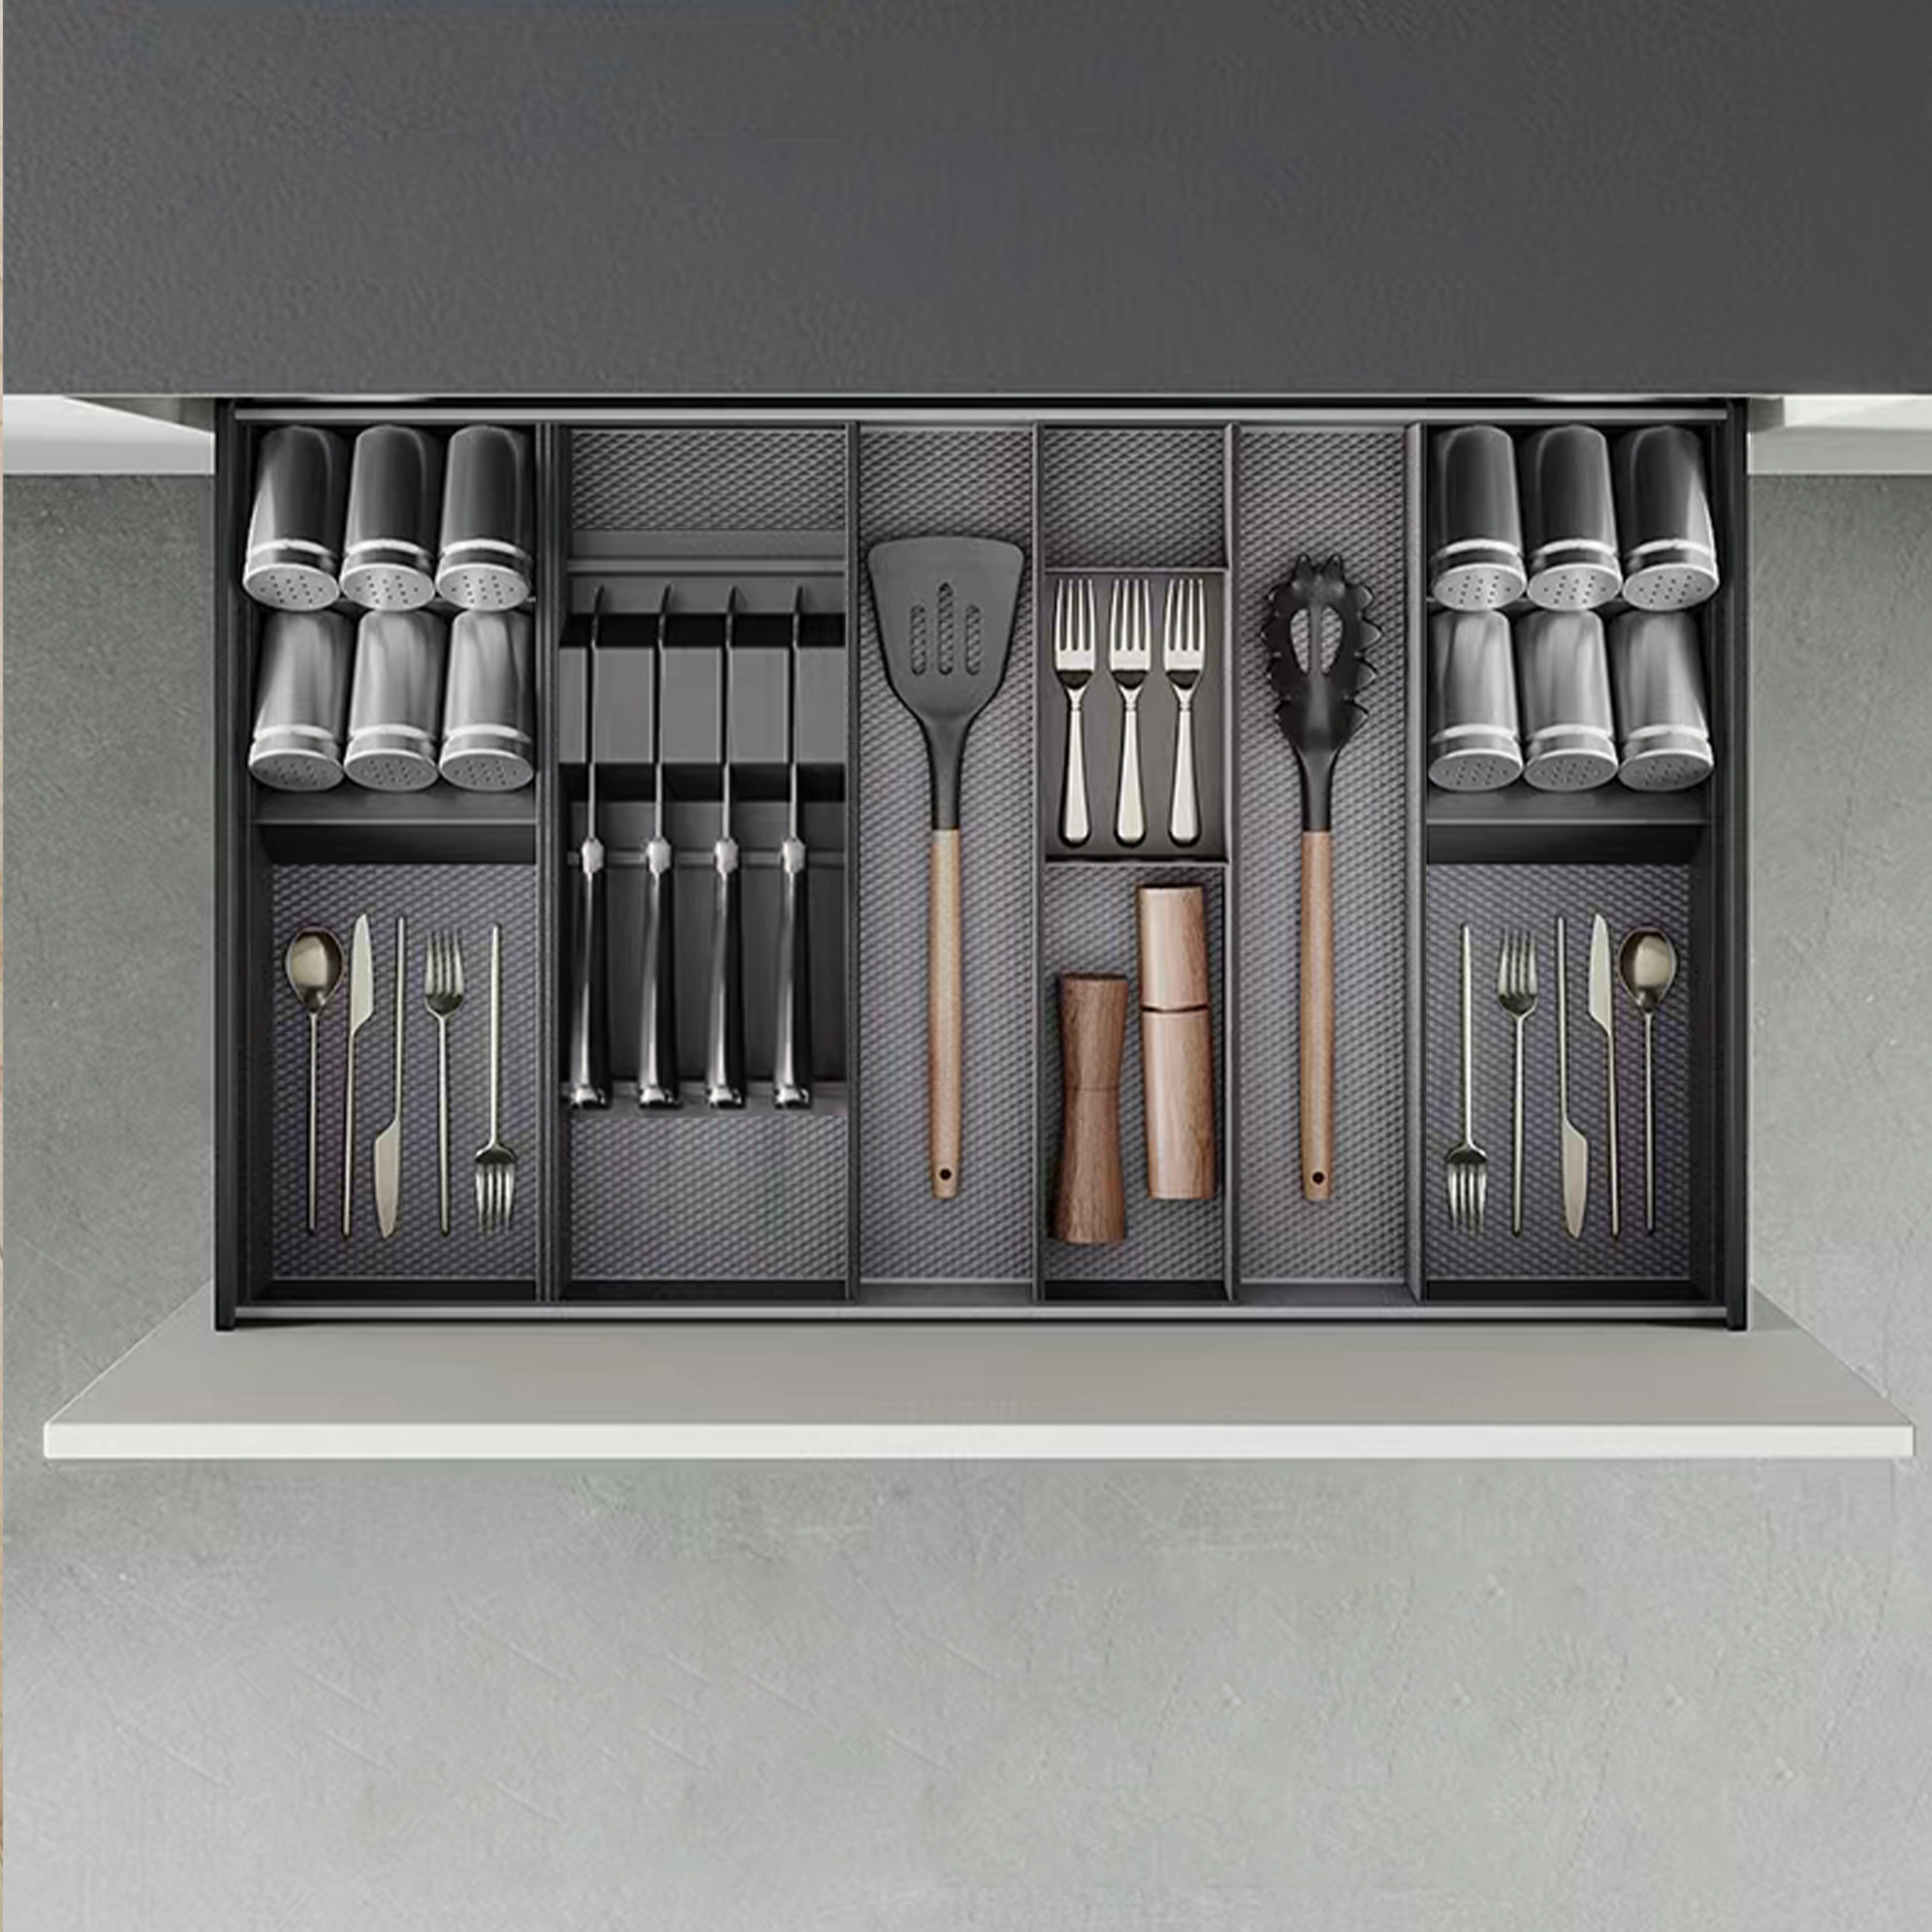  Porte-couteaux Orderbox pour tiroir, 150x470 mm, Gris anthracite, Acier et Bois